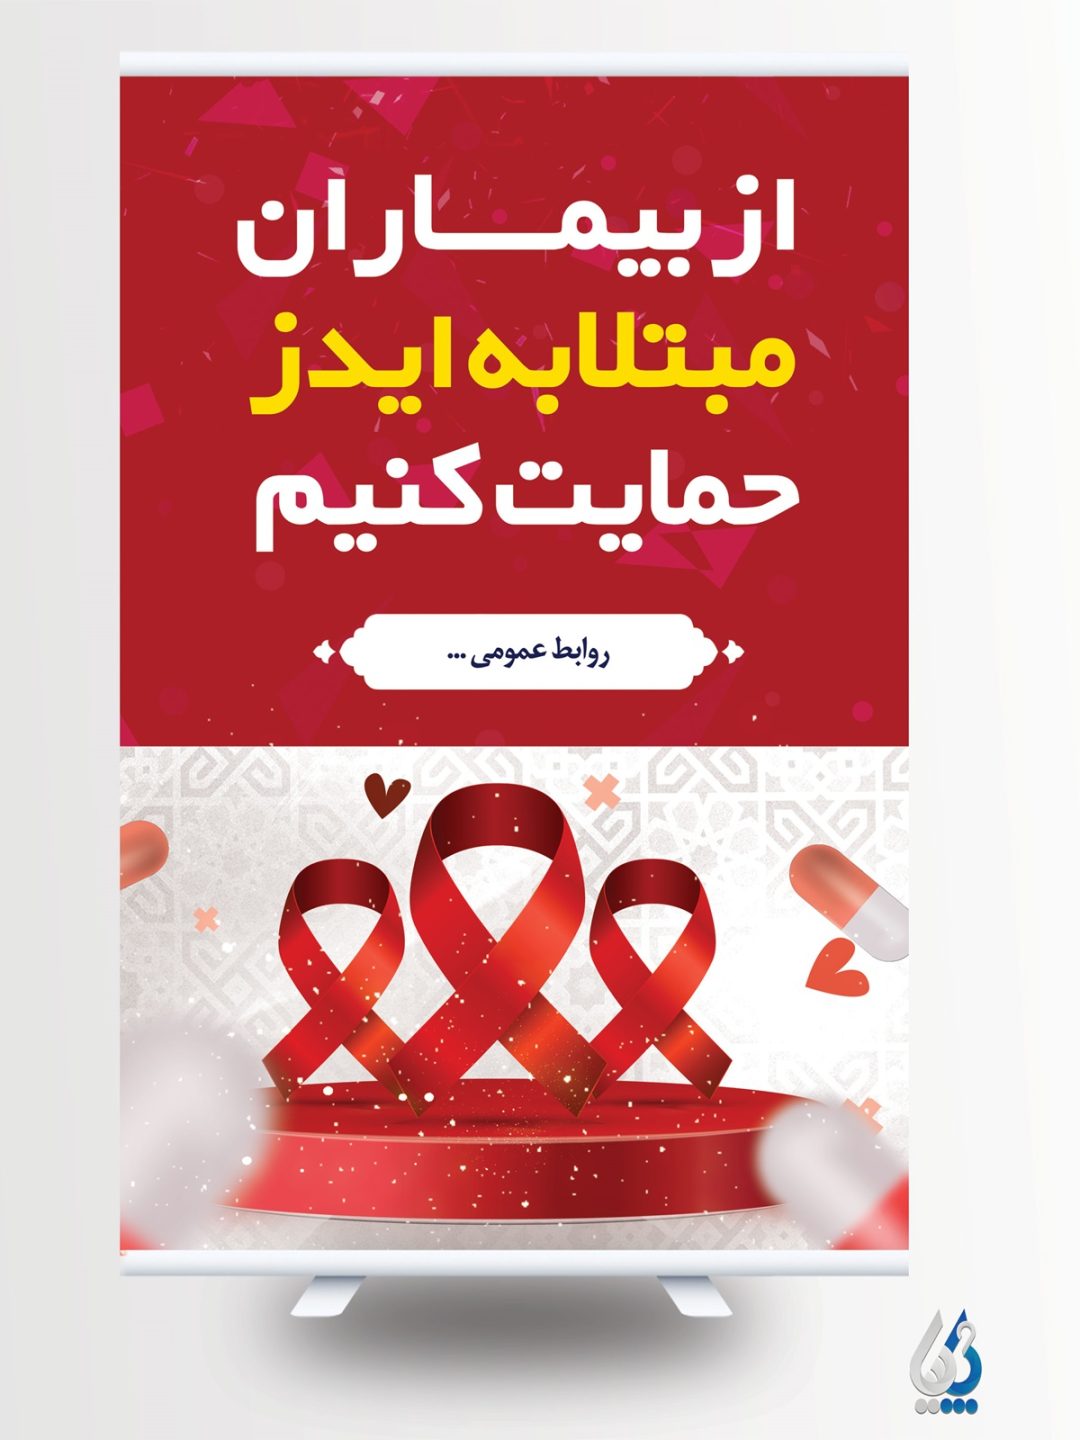 تبلیغات روز جهانی ایدز